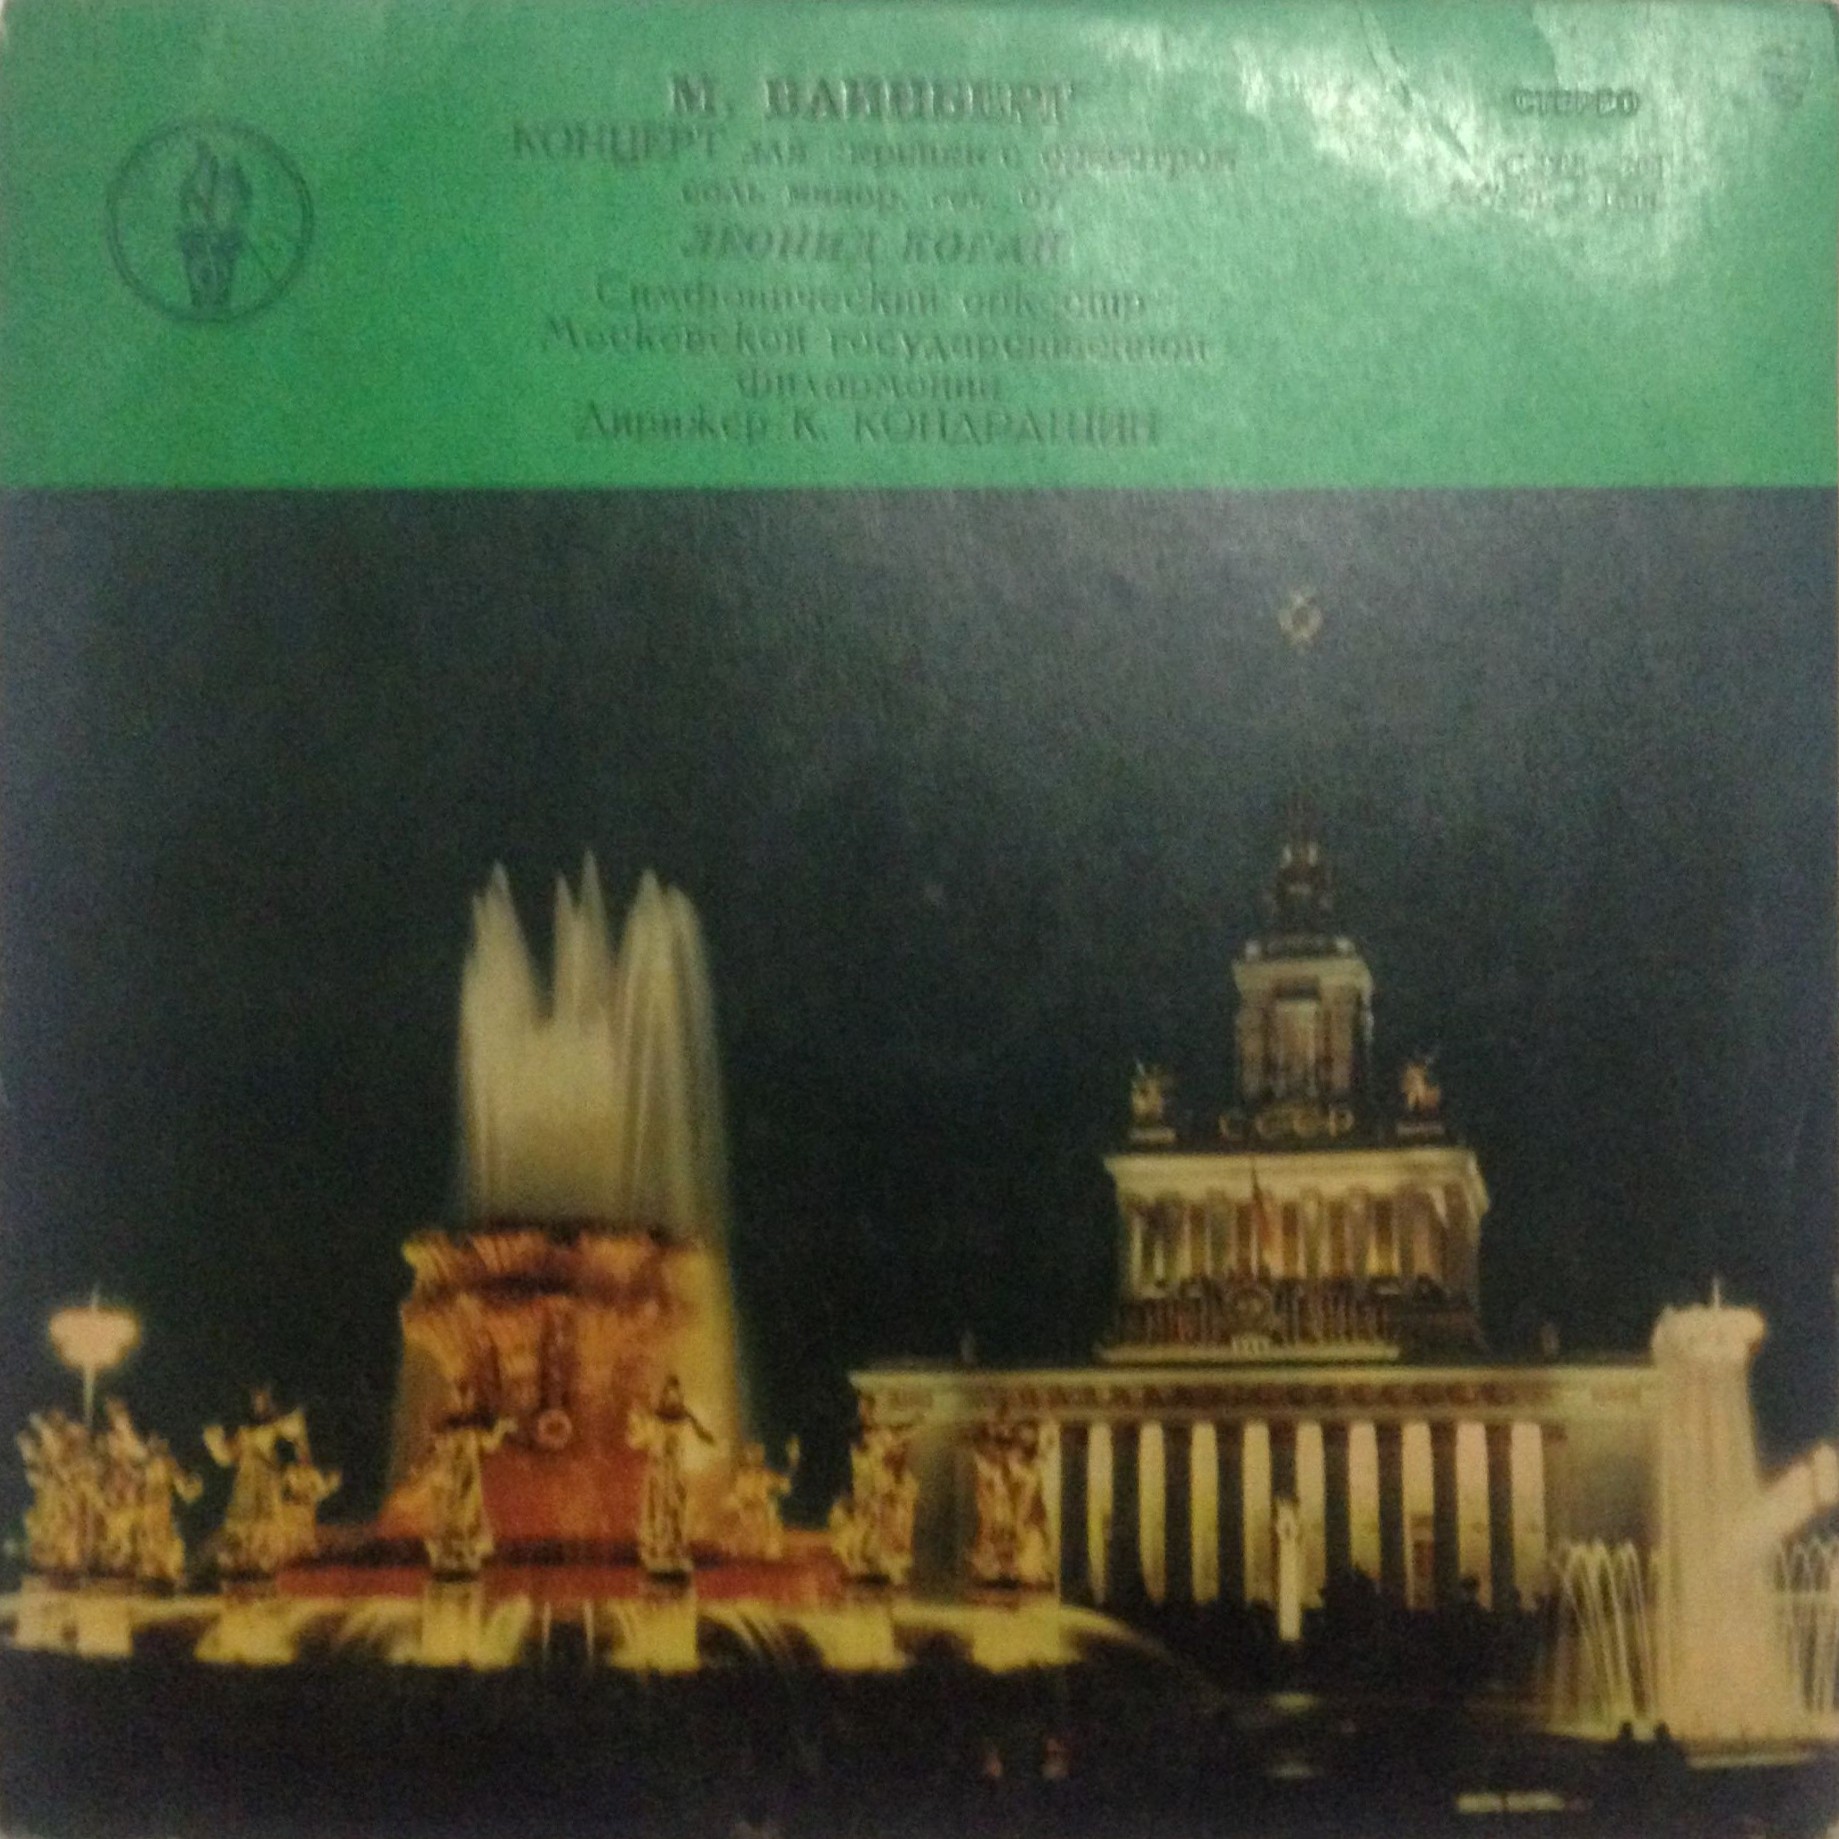 М. ВАЙНБЕРГ (1919-1996) Концерт для скрипки с оркестром (Л. Коган, К. Кондрашин)